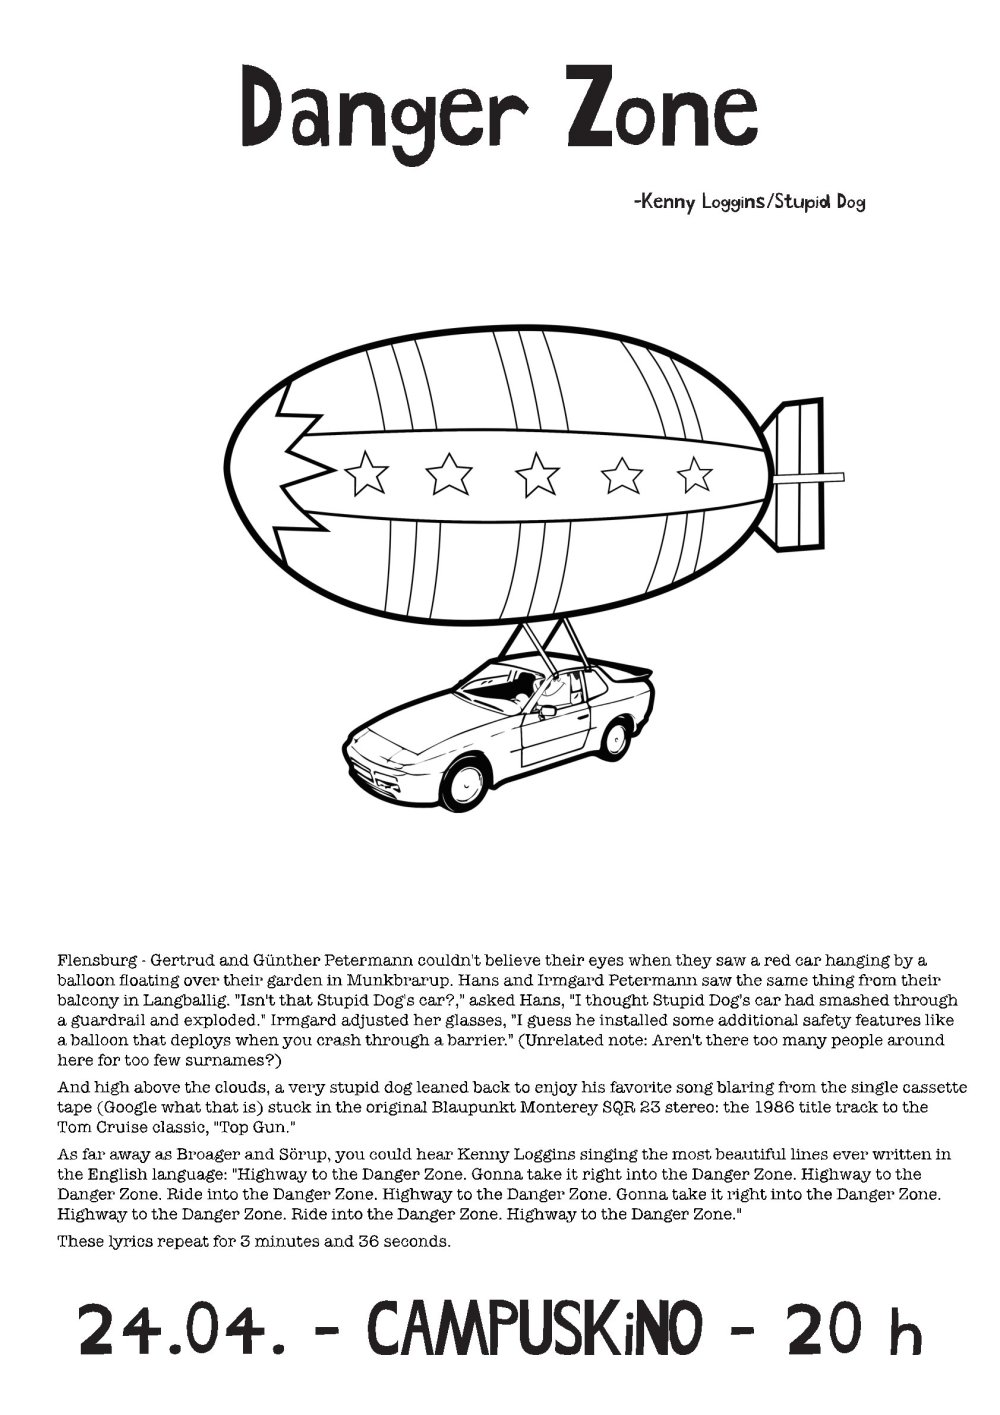 Ein weißes Plakat mit der Zeichung eines Autos, das an einem Zeppelin hängt. Darüber die Überschrift "Danger Zone - Kenny Loggins/Stupid Dog"; darunter weiterer Text in kleinerer Schrift. Ganz unten, wieder in groß: 24.04. - CampusKino - 20 h